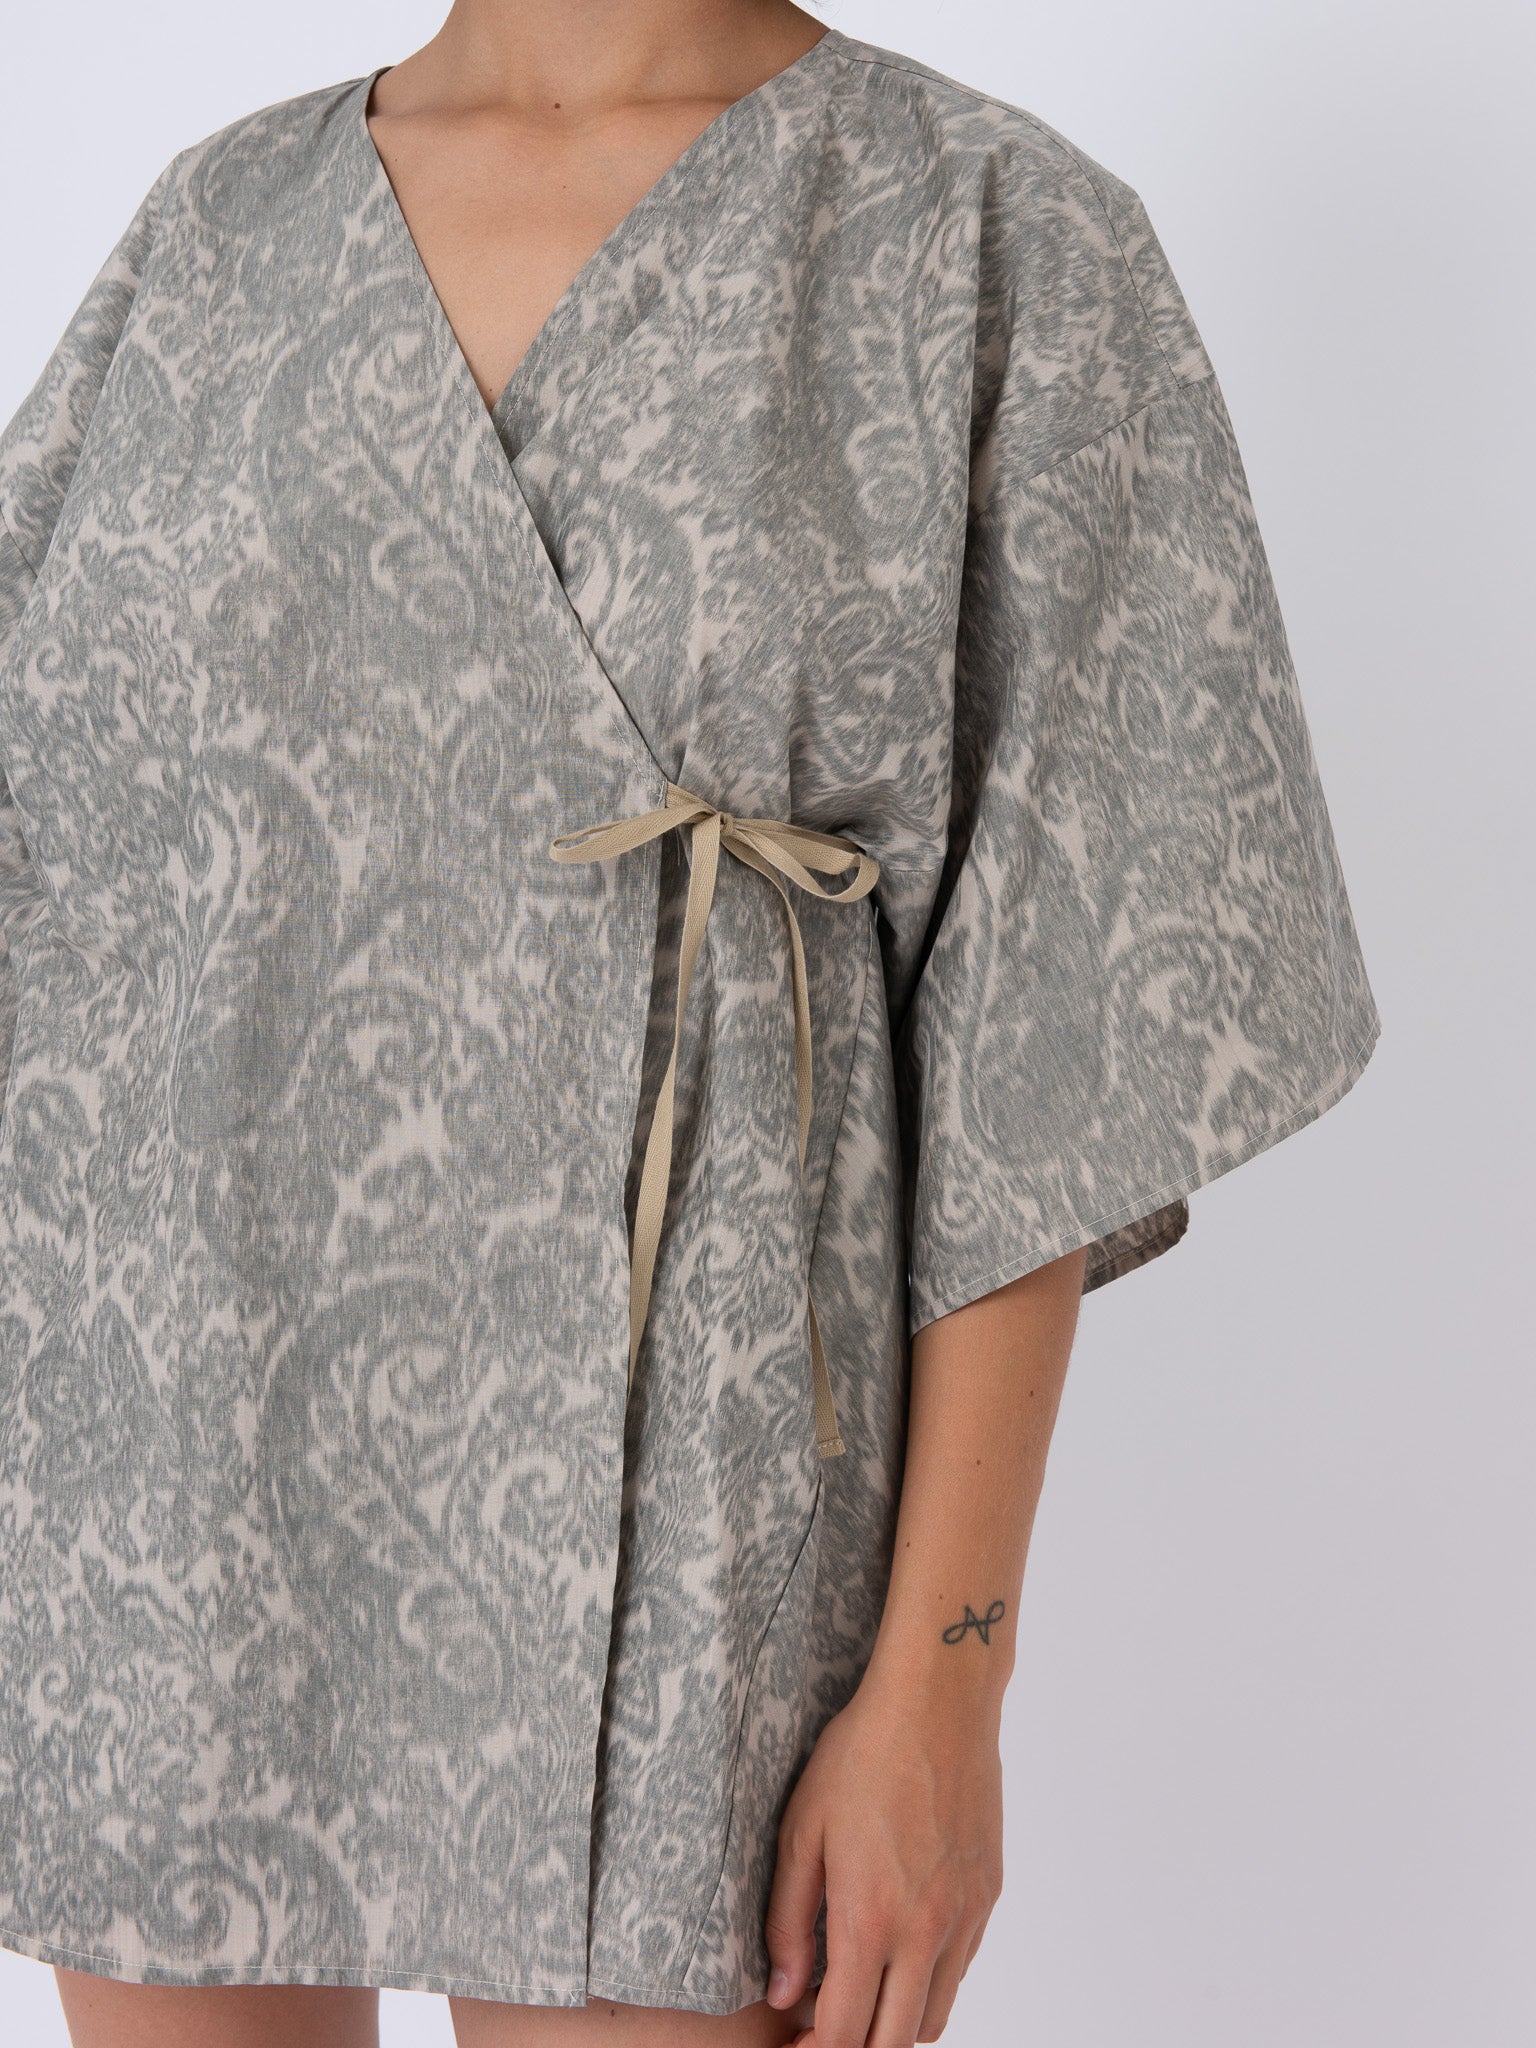 Fujiko Dress, front view, kimono, unique, luxury textiles